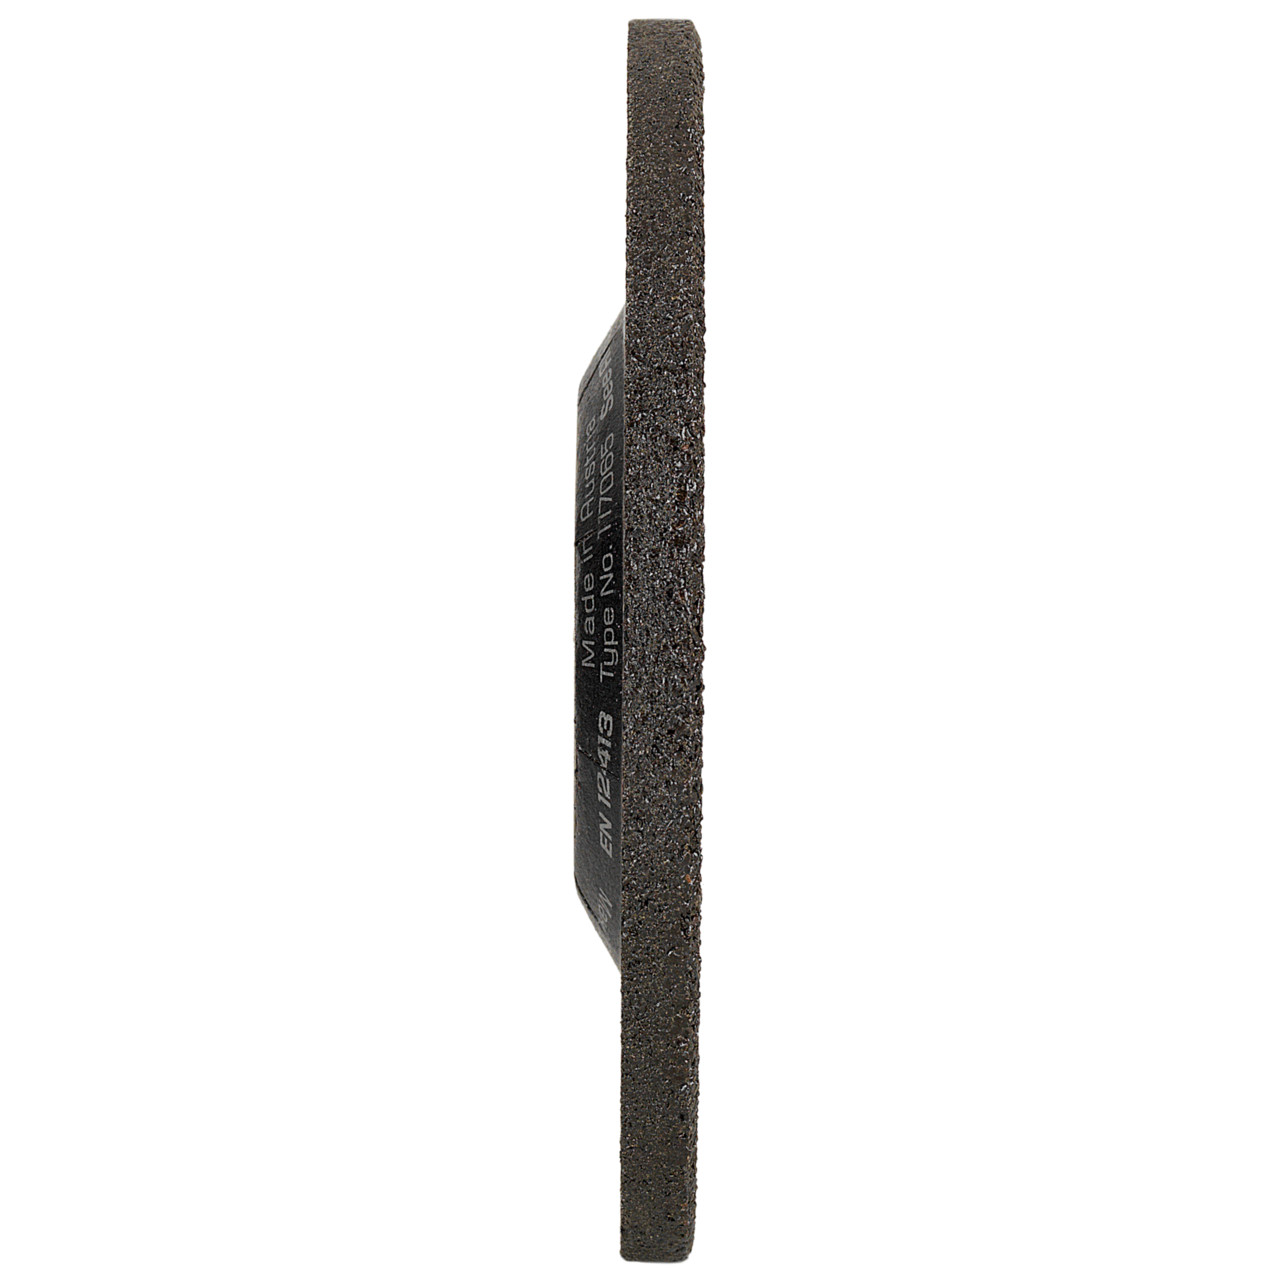 Tyrolit Opbraamschijf DxUxH 125x7x22,23 Voor roestvrij staal, vorm: 27 - offset uitvoering, Art. 117070